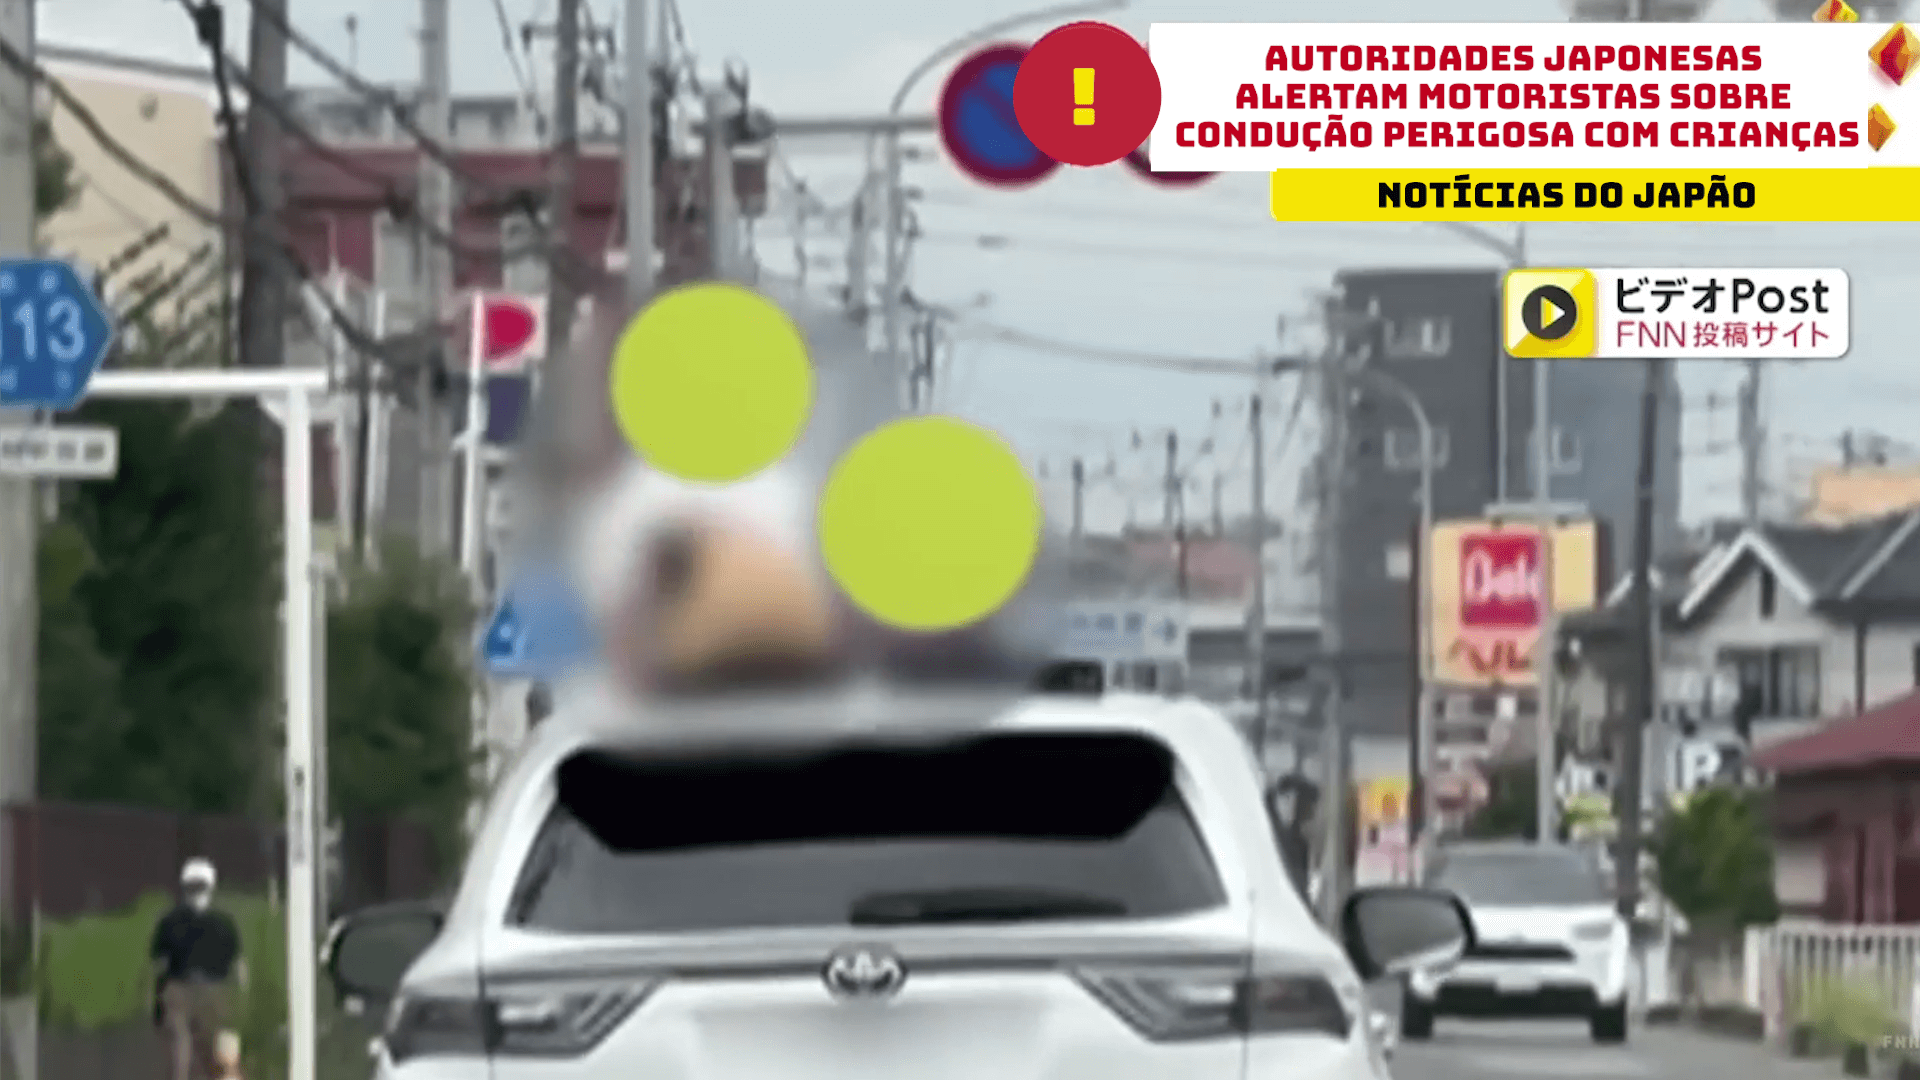 Autoridades japonesas alertam motoristas sobre condução perigosa com crianças